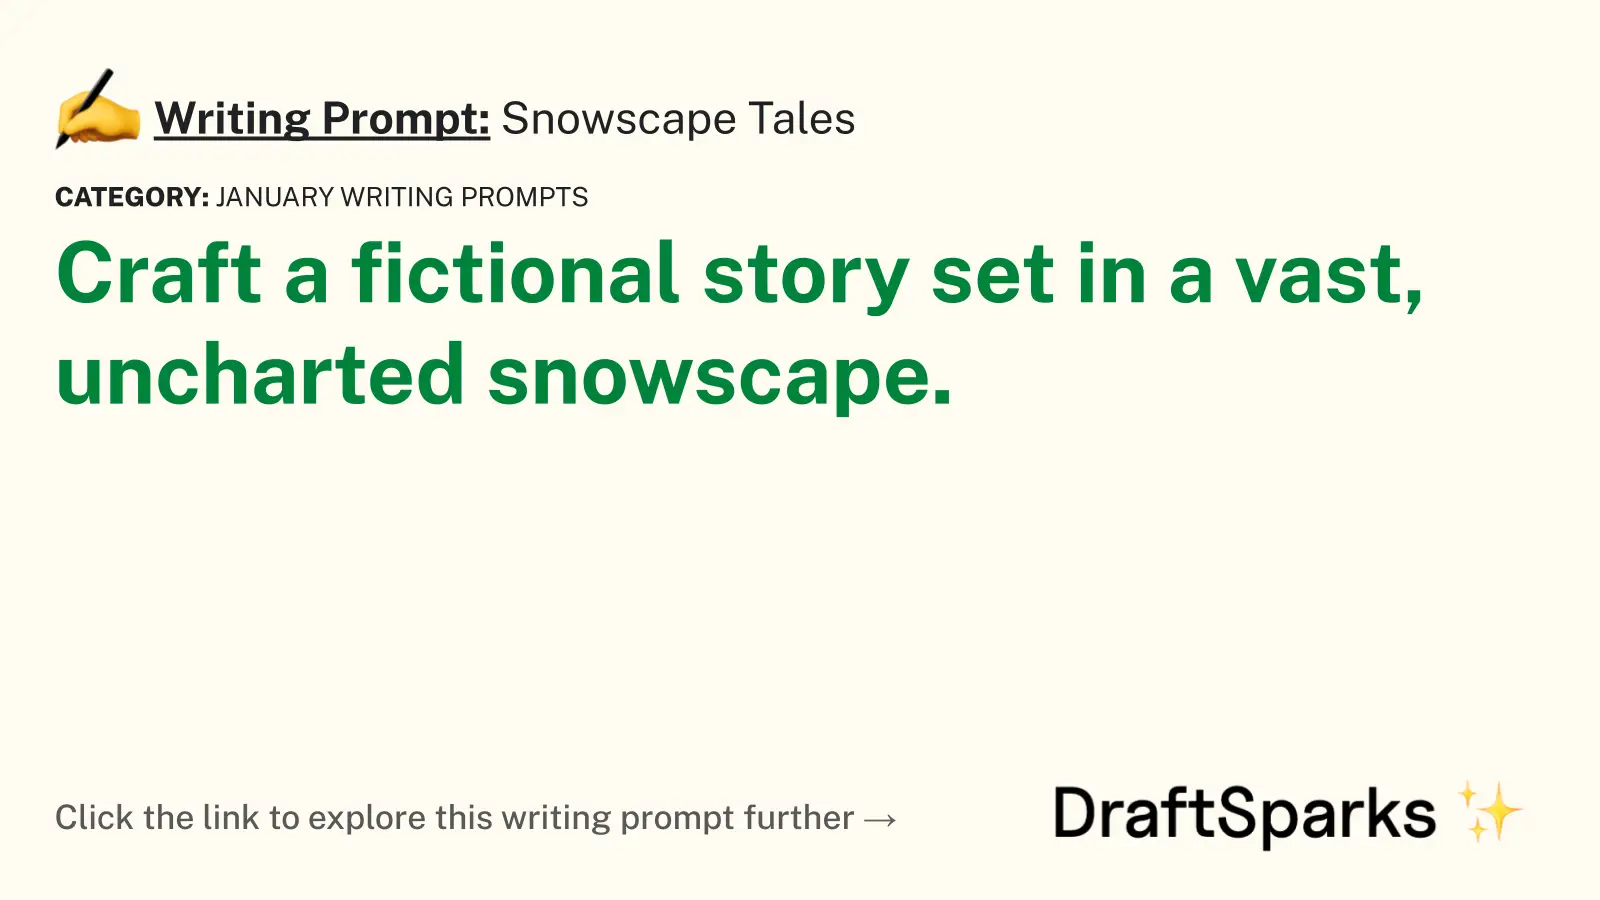 Snowscape Tales